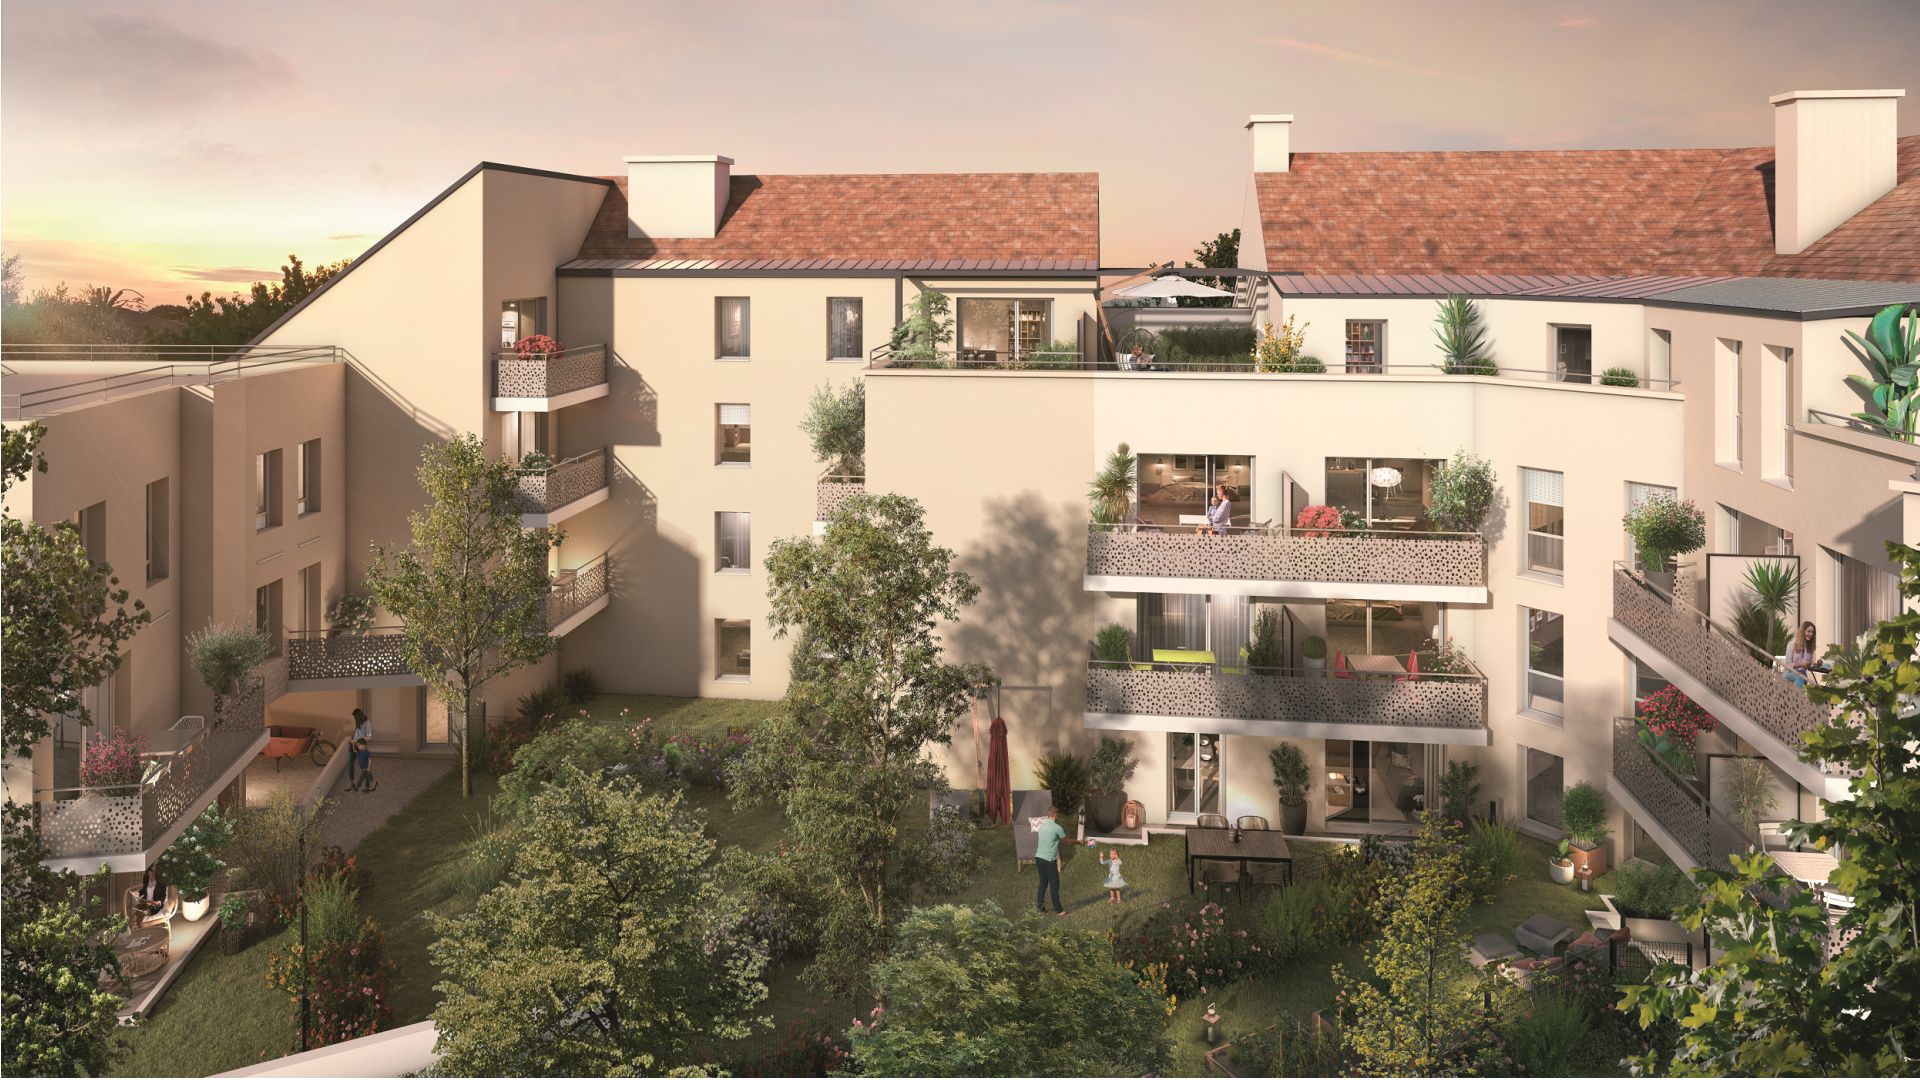 Greencity immobilier - achat appartements neufs du T1 au T3 Duplex - Résidence Cours Wilson - 95260 Beaumont-sur-Oise - vue jardin